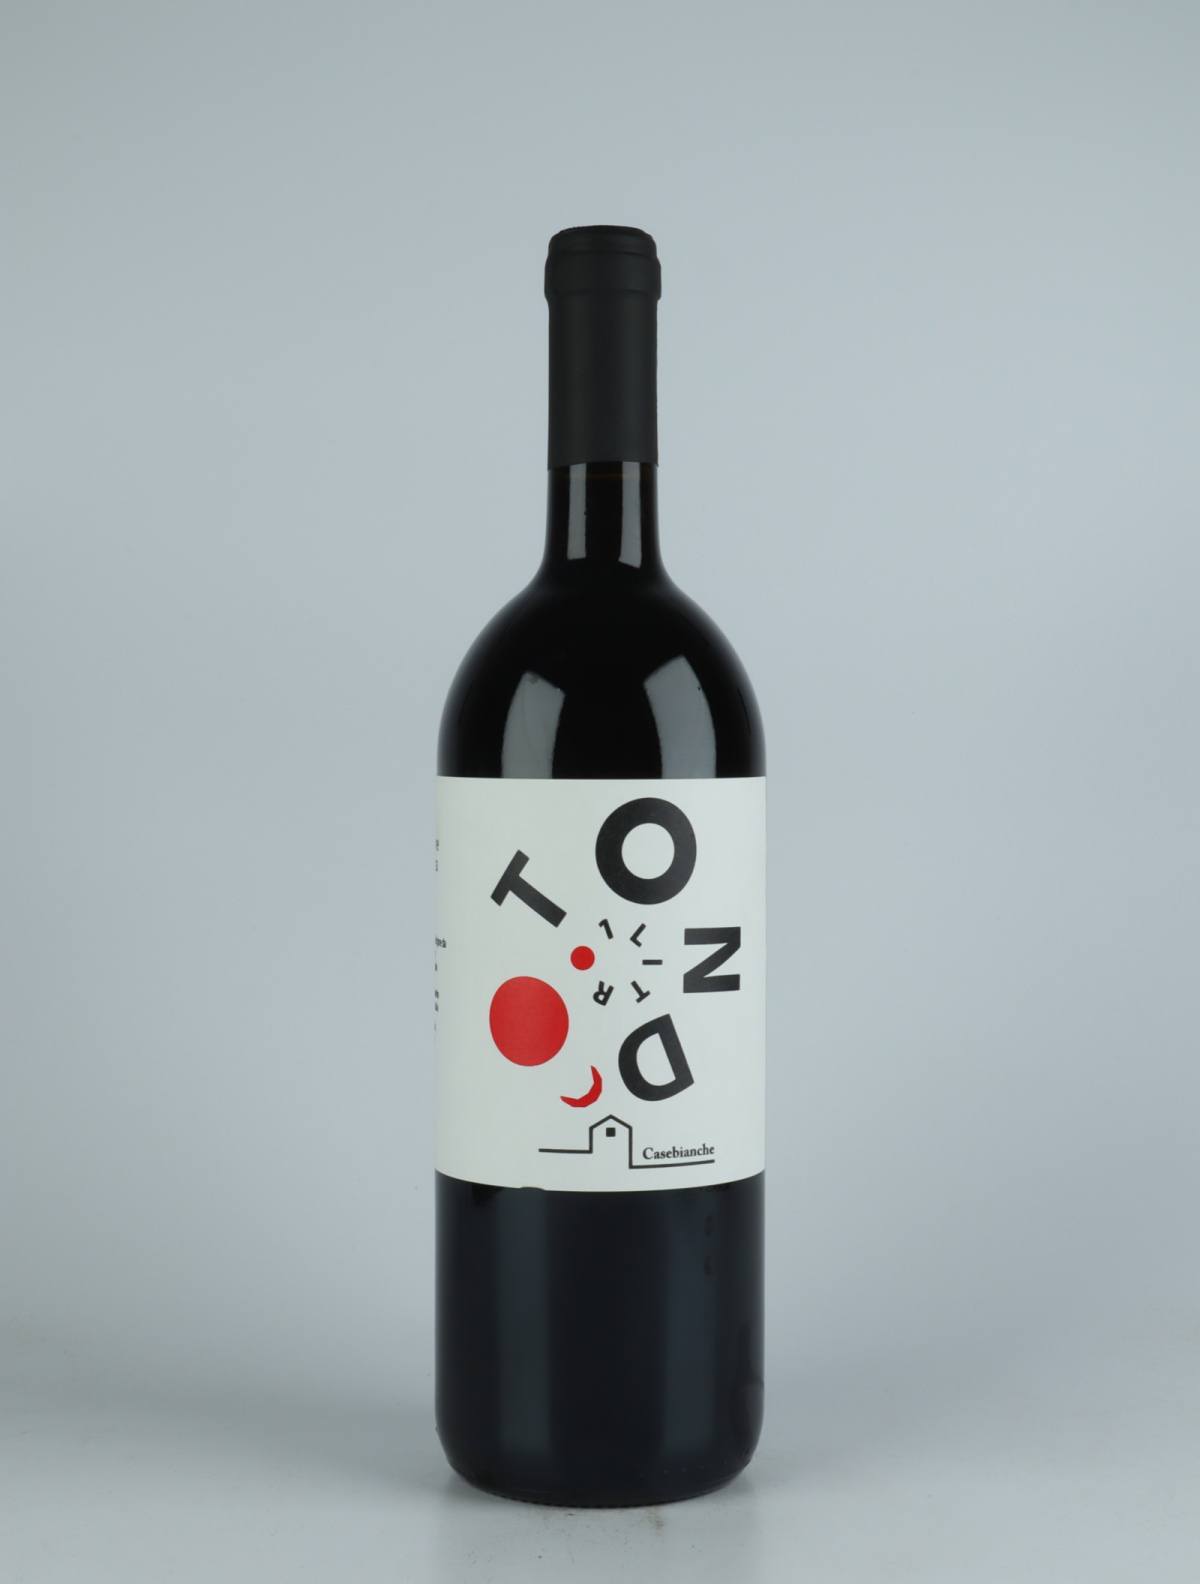 A bottle 2021 Tondo Litro Rosso Red wine from Casebianche, Campania in Italy